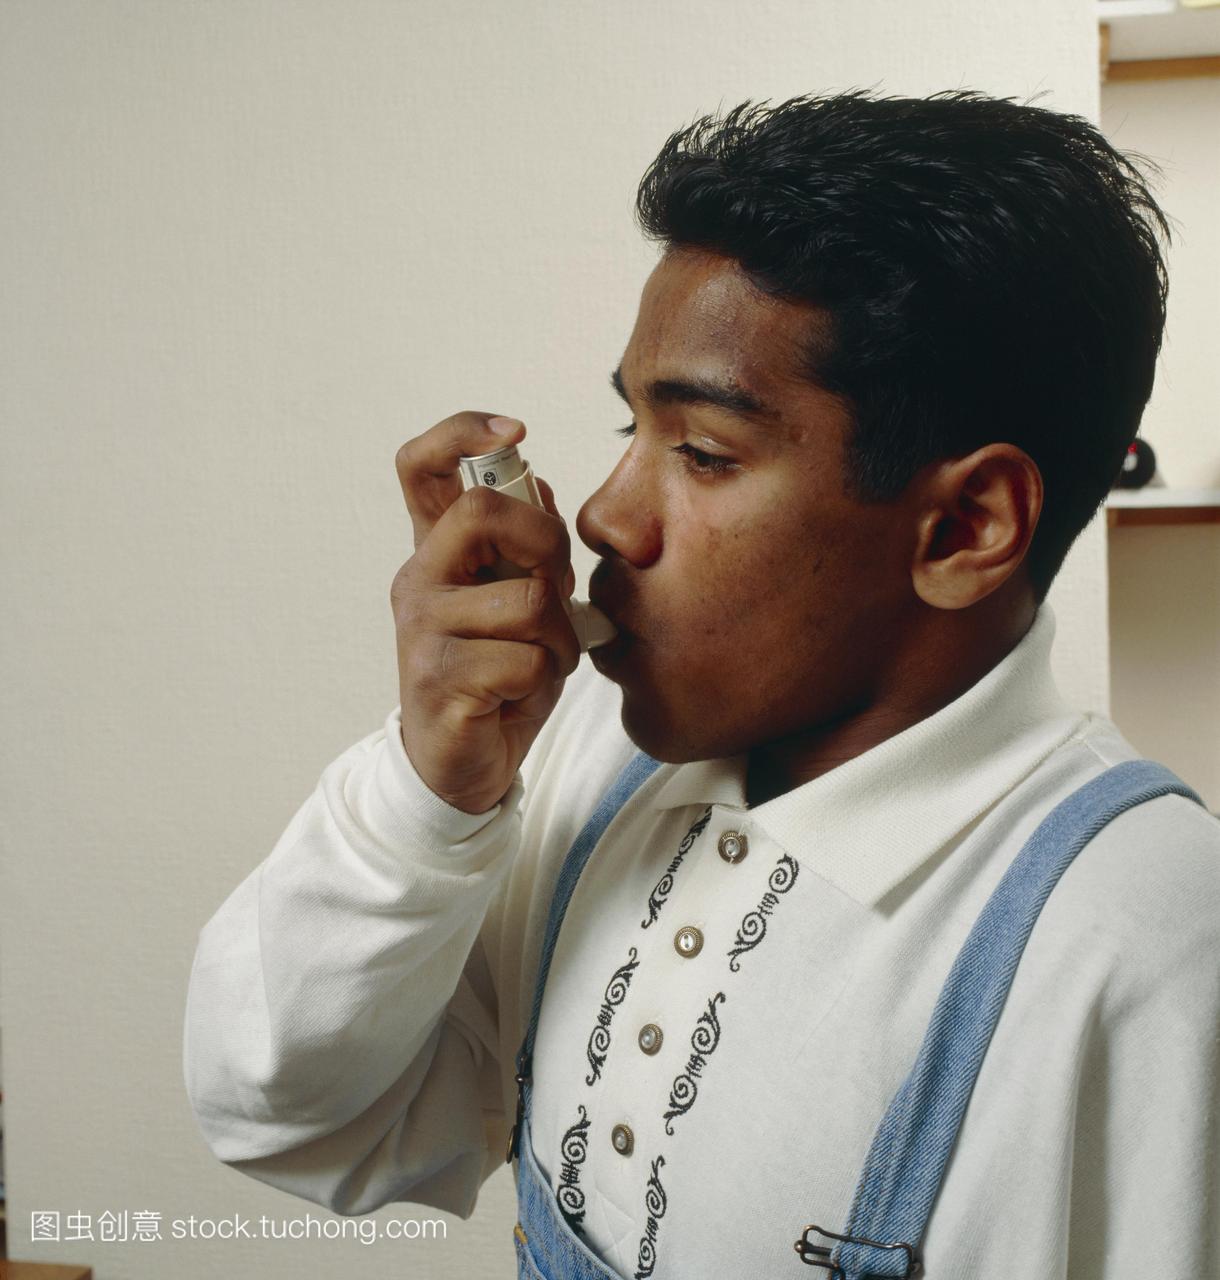 使用吸入器控制哮喘发作,哮喘是一种支气管疾